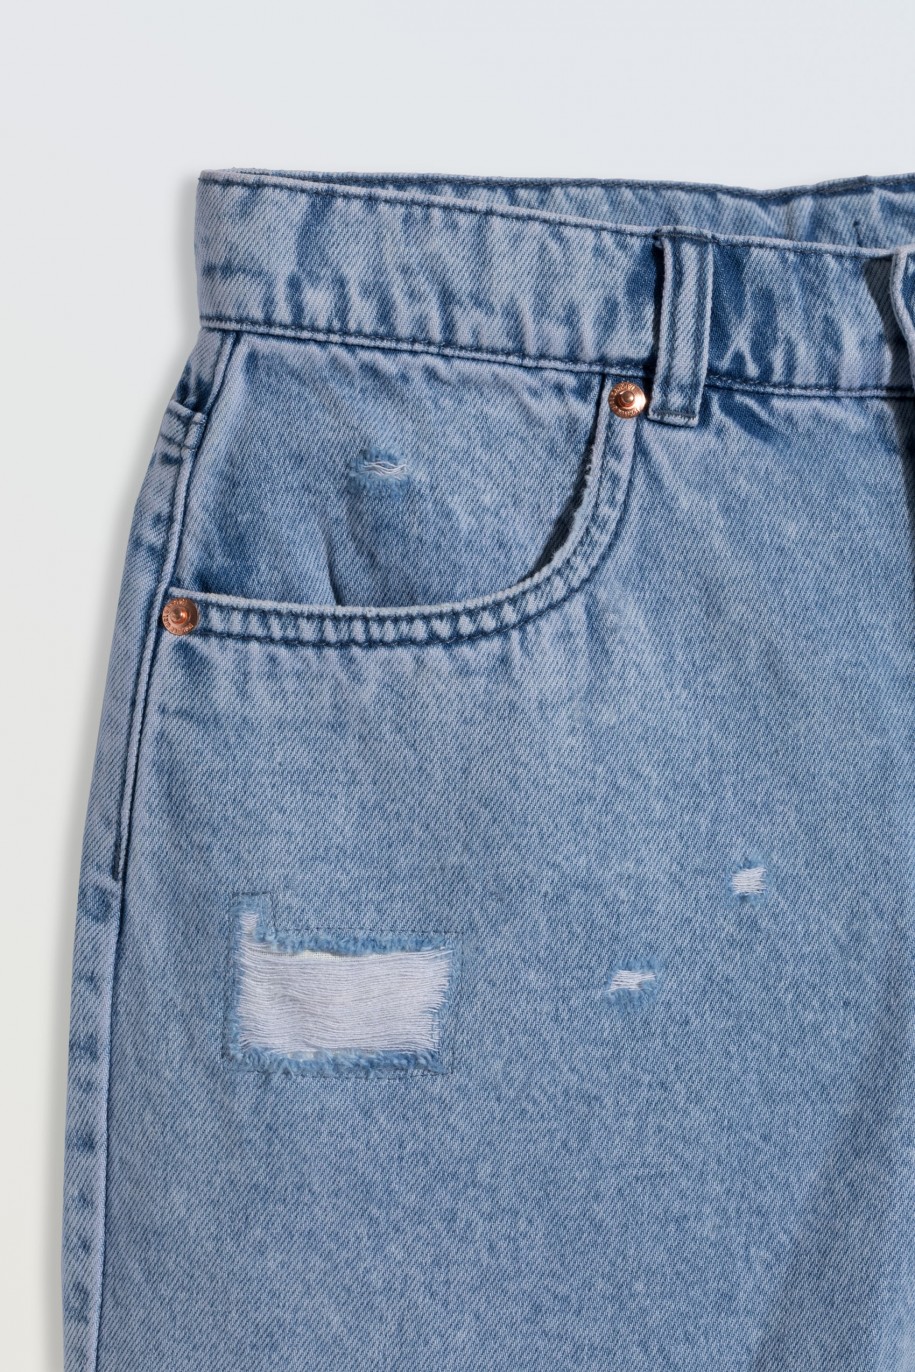 Jasnoniebieskie krótkie spodenki jeansowe z modnymi przetarciami - 46791